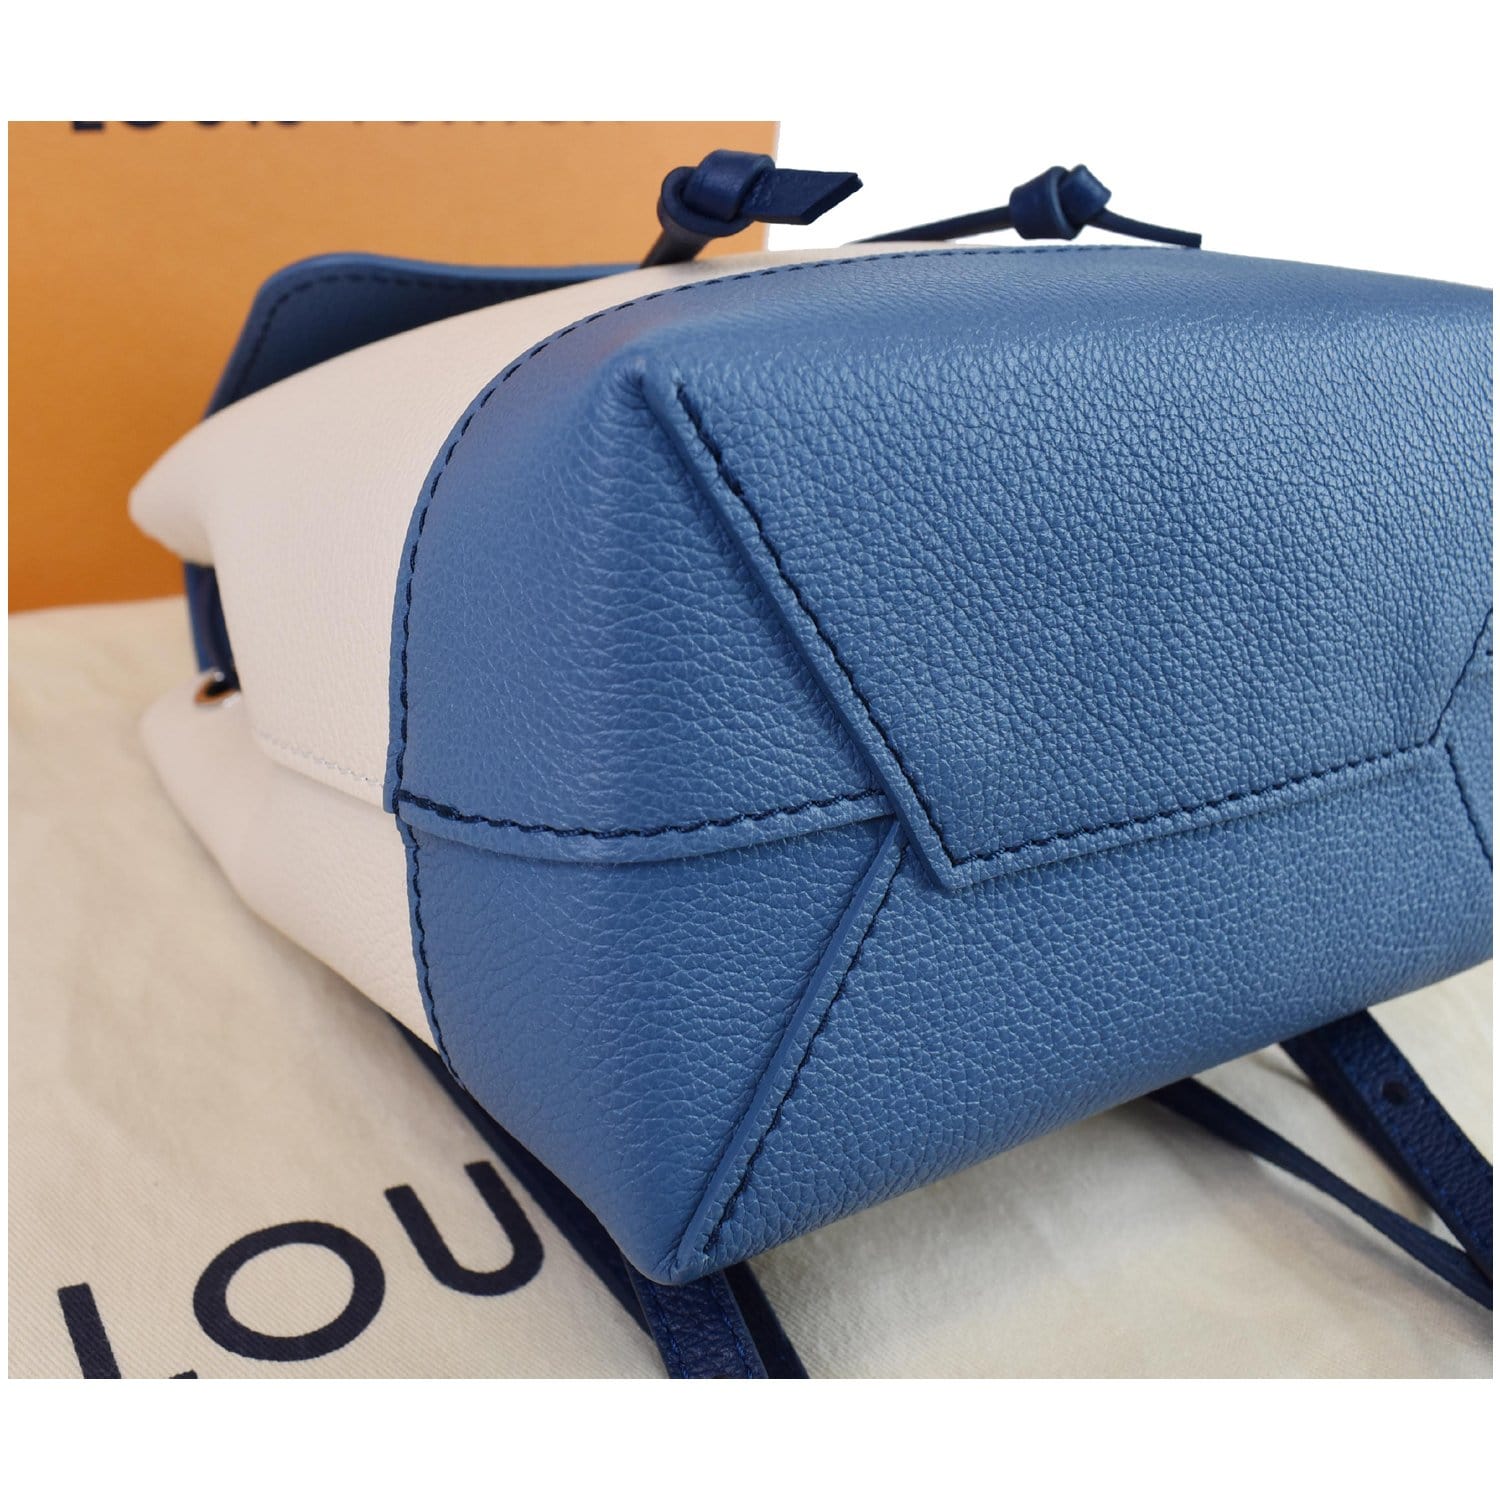 Louis Vuitton, Bags, Authentic Louis Vuitton Mini Lockme Backpack France